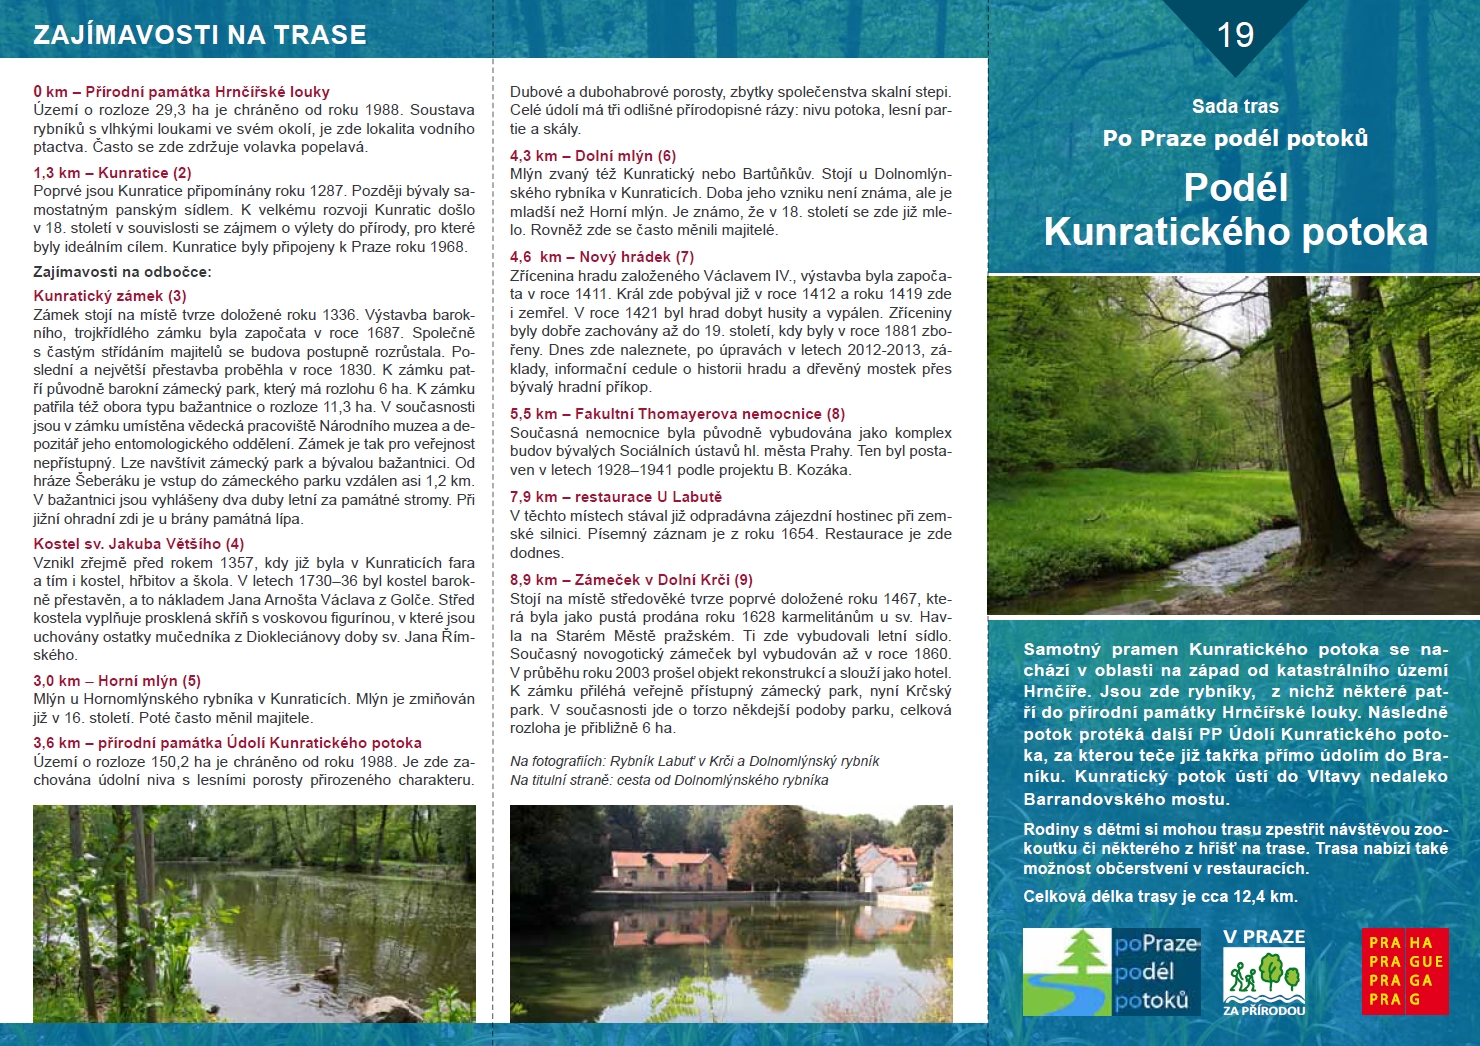 Informační materiál k trase Podél Kunratického potoka (č. 19), v. 2020